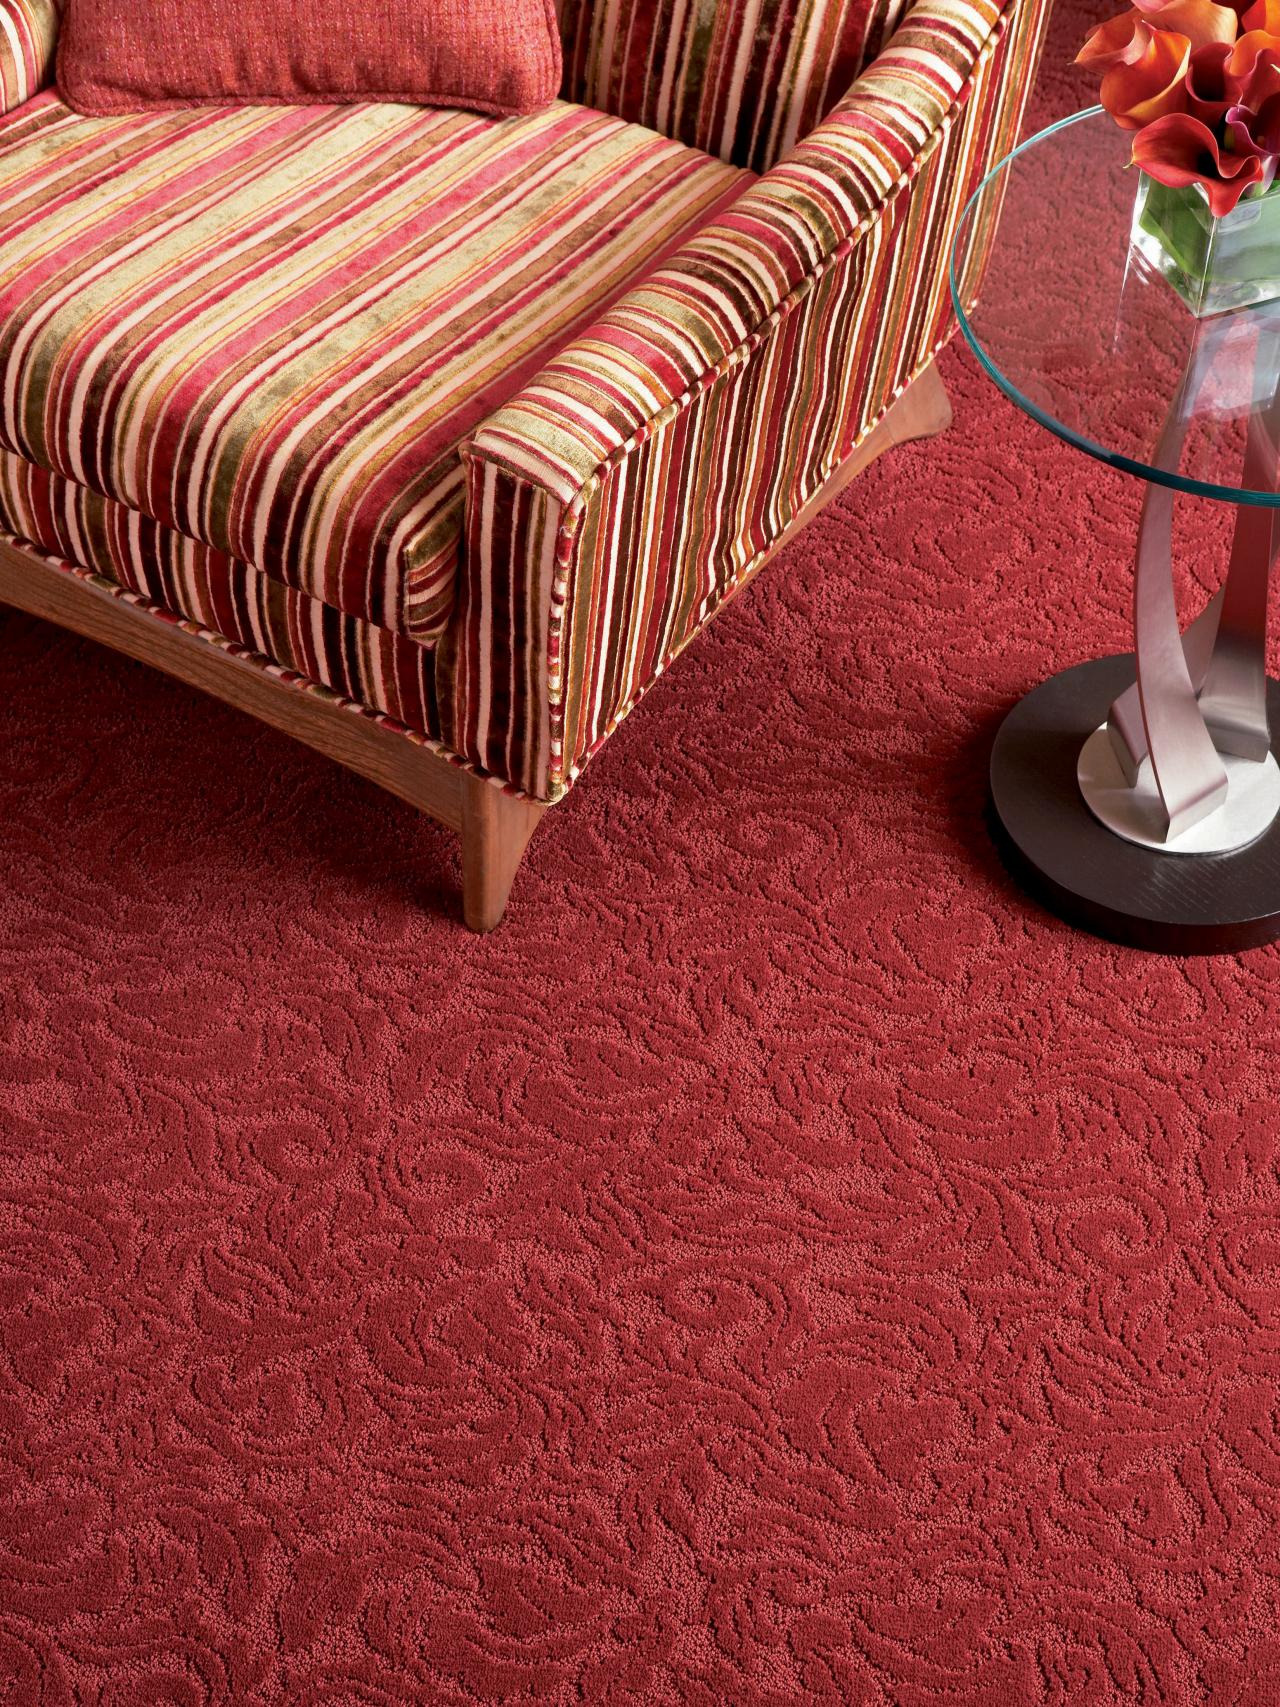 design carpet todayu0027s carpet trends QPEACDF